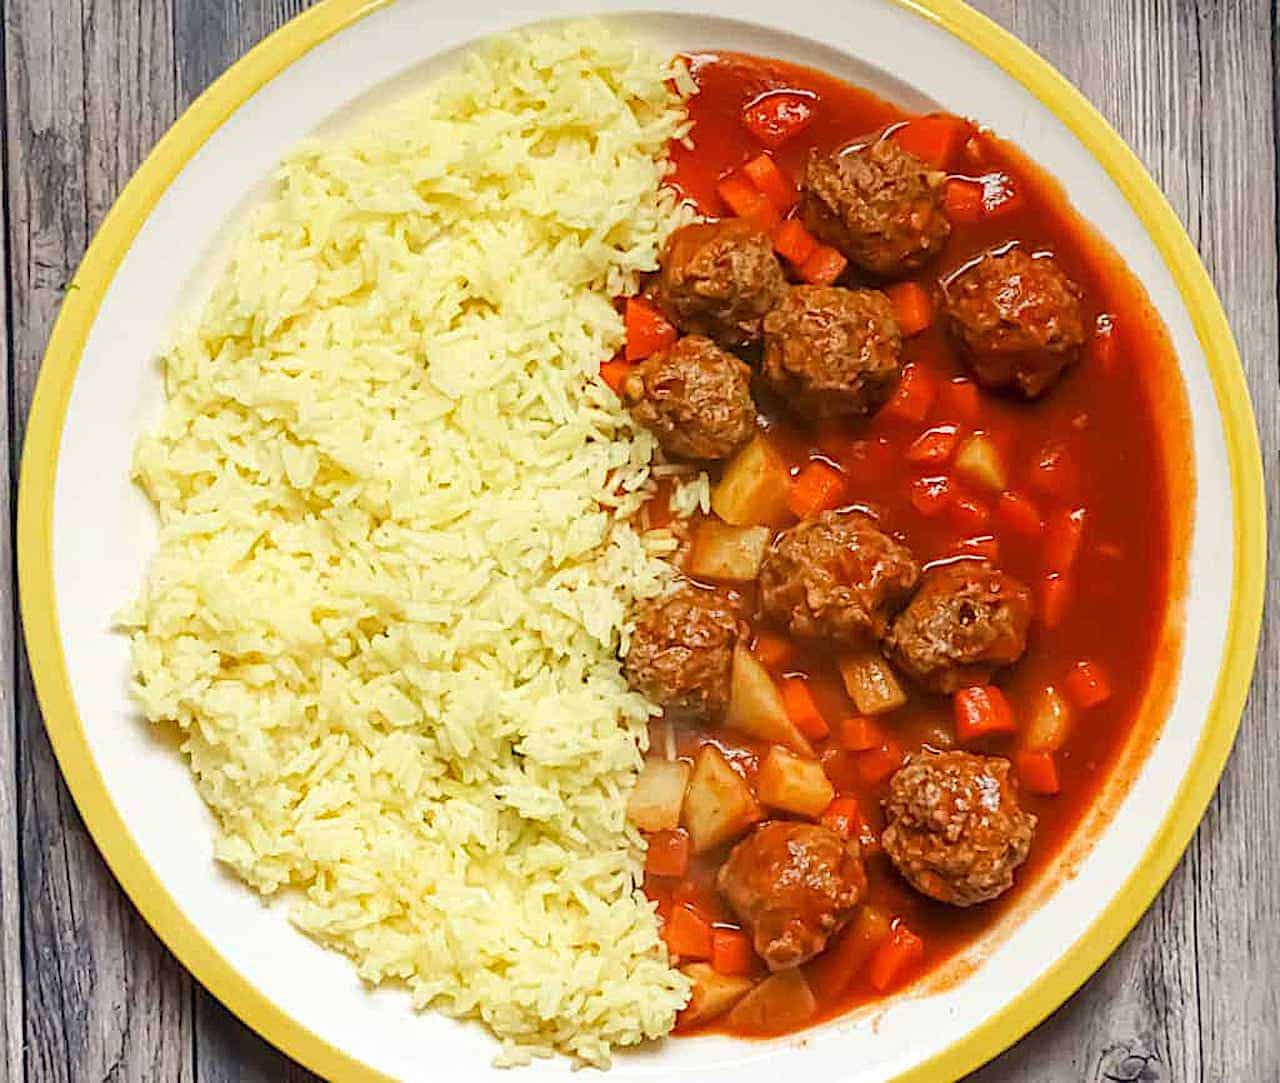 Syrian Kebab Hindi with lamb meatballs, potatoes, carrots, and basmati rice